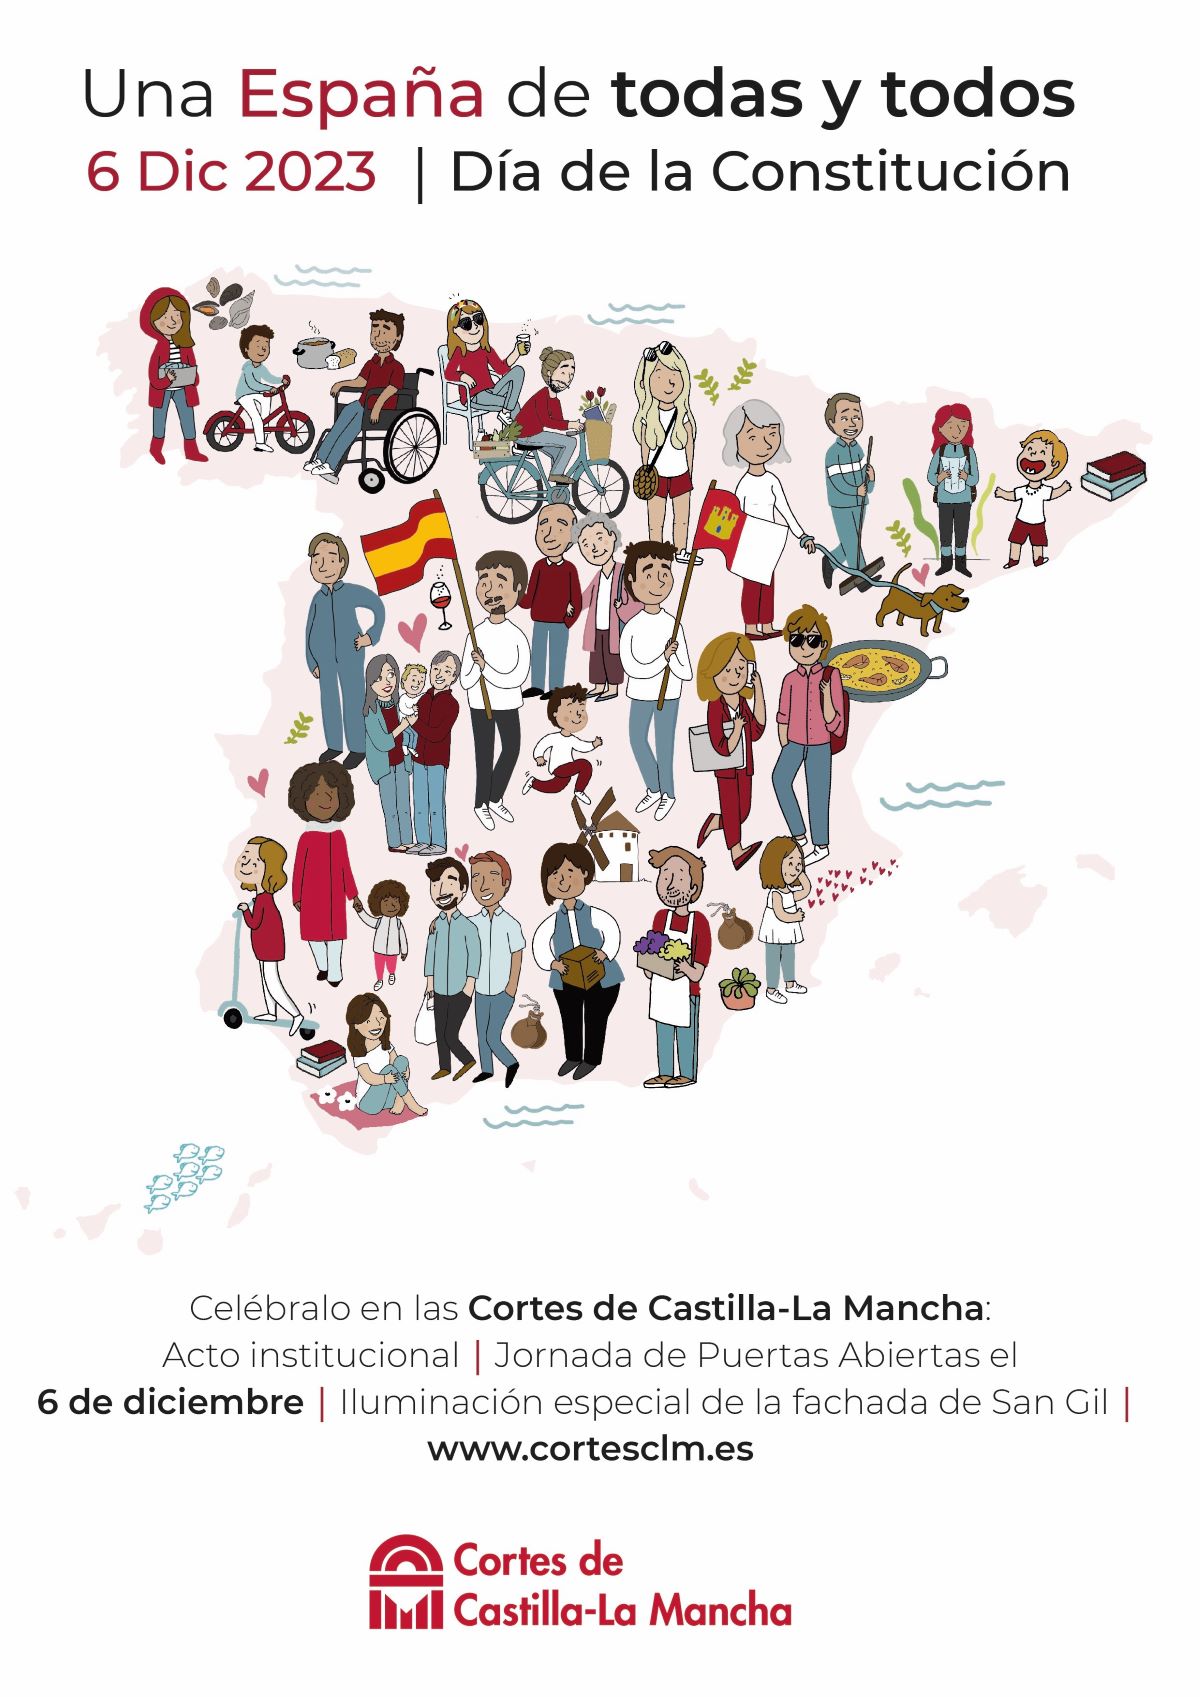 Las Cortes de C-LM lanzan una campaña de defensa de la Constitución con el lema 'Una España de todas y todos'